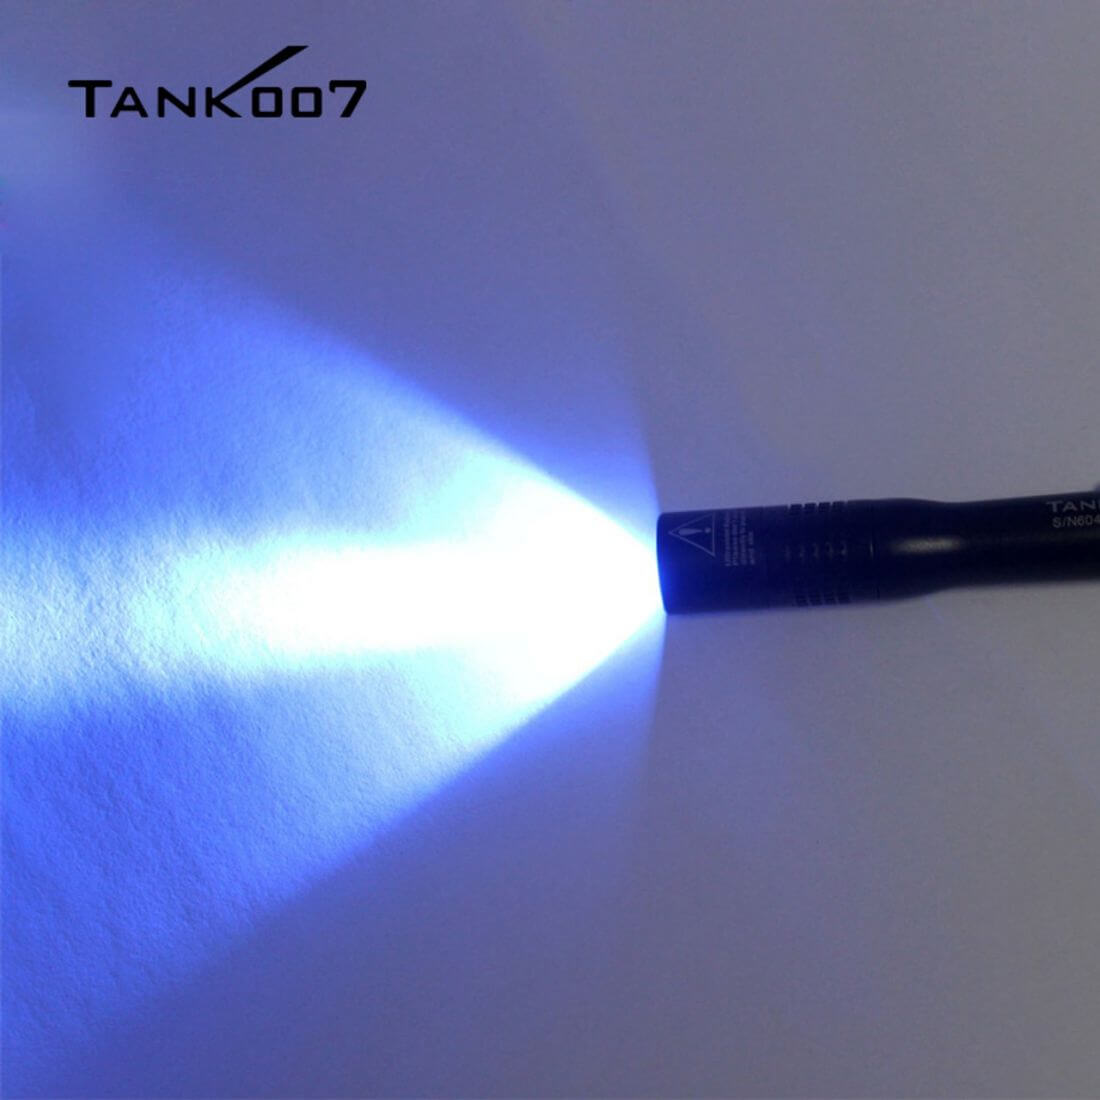 TANK007 UVE2 Fluorescent Detection UV penlight